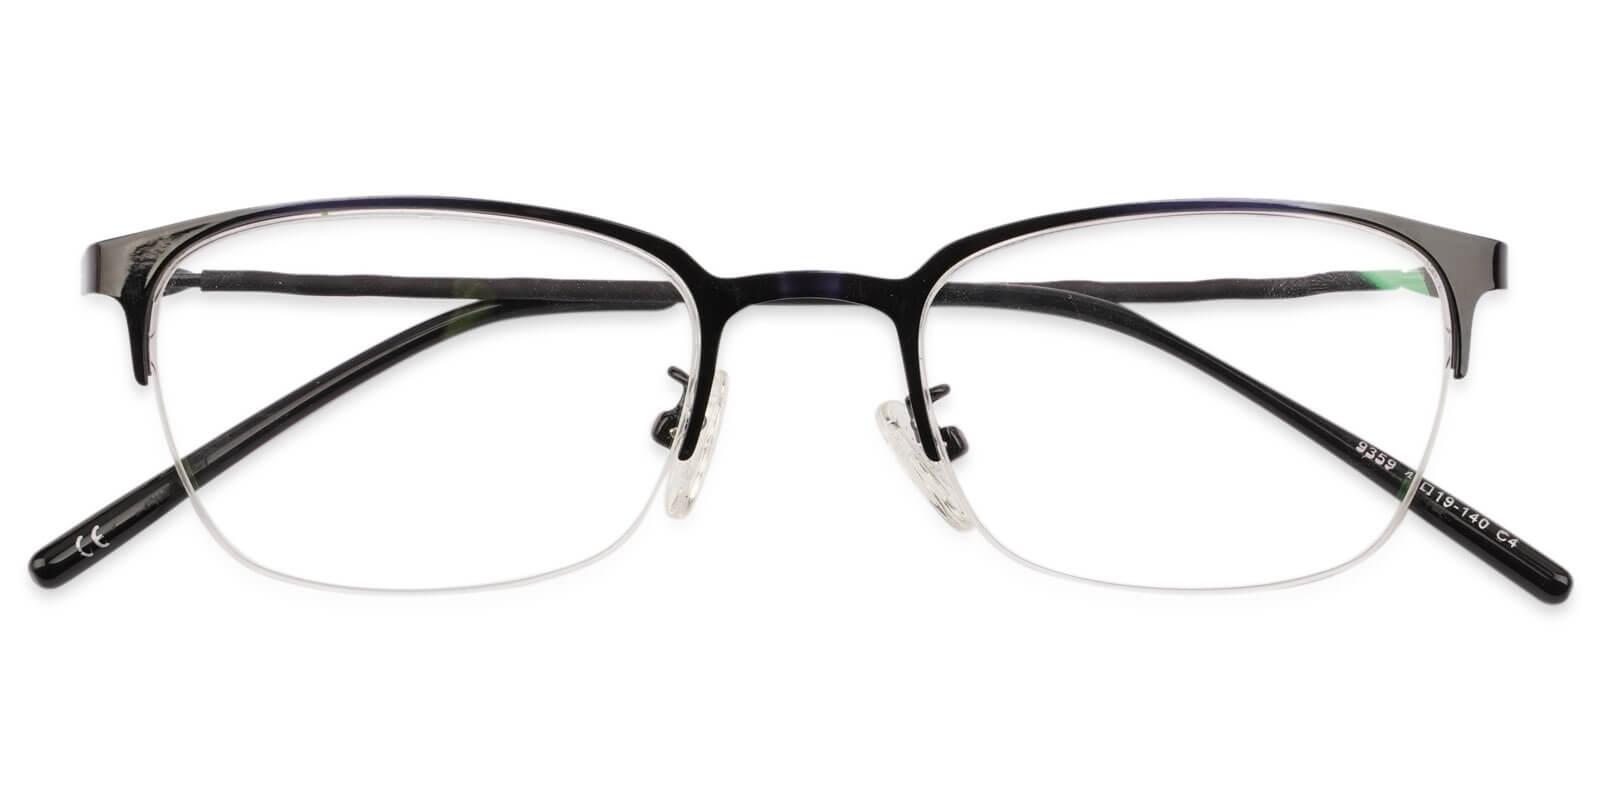 Lassiter Blue Metal Eyeglasses , NosePads Frames from ABBE Glasses